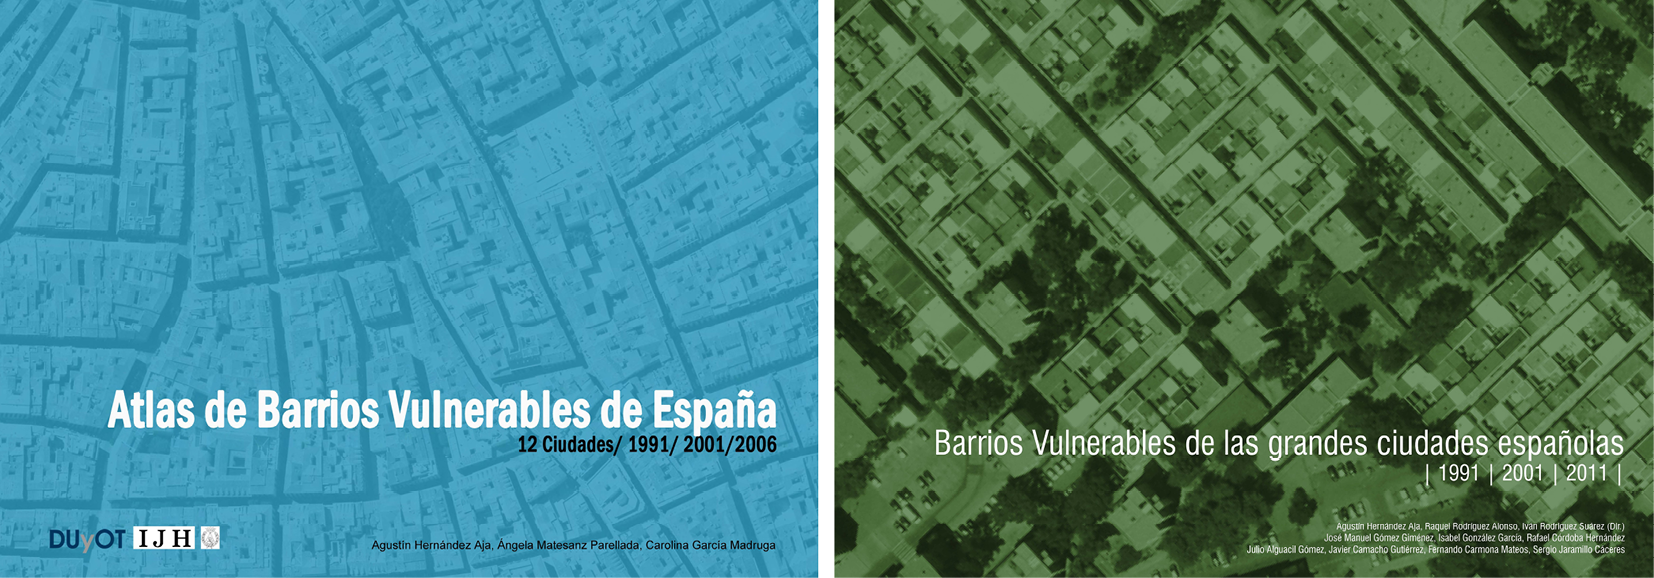 Fig. 1/ Portada de dos de las publicaciones derivadas de los Catálogos de Barrios Vulnerables de 1991, 2001 y 2011 en las que se analiza la vulnerabilidad en las ciudades mayores de 300 mil habitantes.